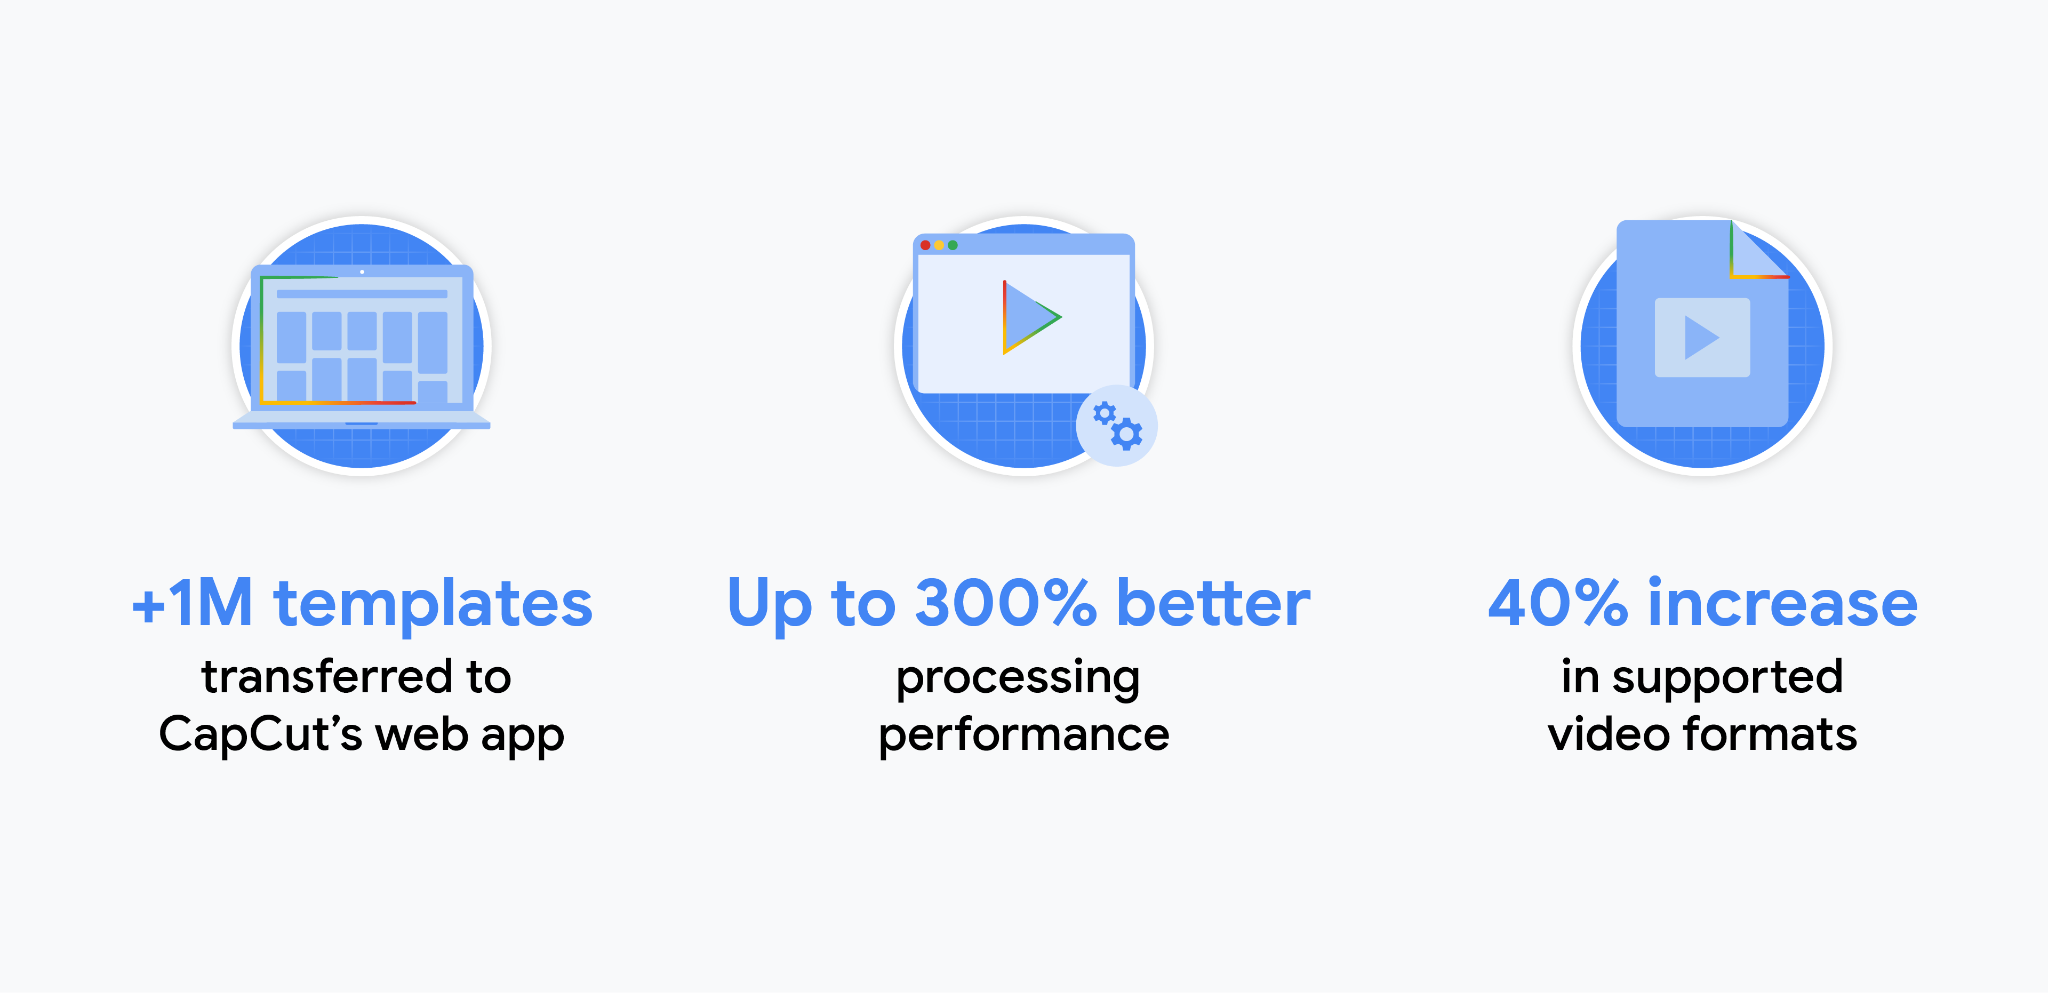 CapCut ऐप्लिकेशन के बारे में आंकड़े: CapCut के वेब ऐप्लिकेशन में दस लाख से ज़्यादा टेंप्लेट ट्रांसफ़र किए गए हैं. 300% बेहतर प्रोसेसिंग परफ़ॉर्मेंस. इस्तेमाल किए जा सकने वाले वीडियो फ़ॉर्मैट में 40% की बढ़ोतरी हुई.